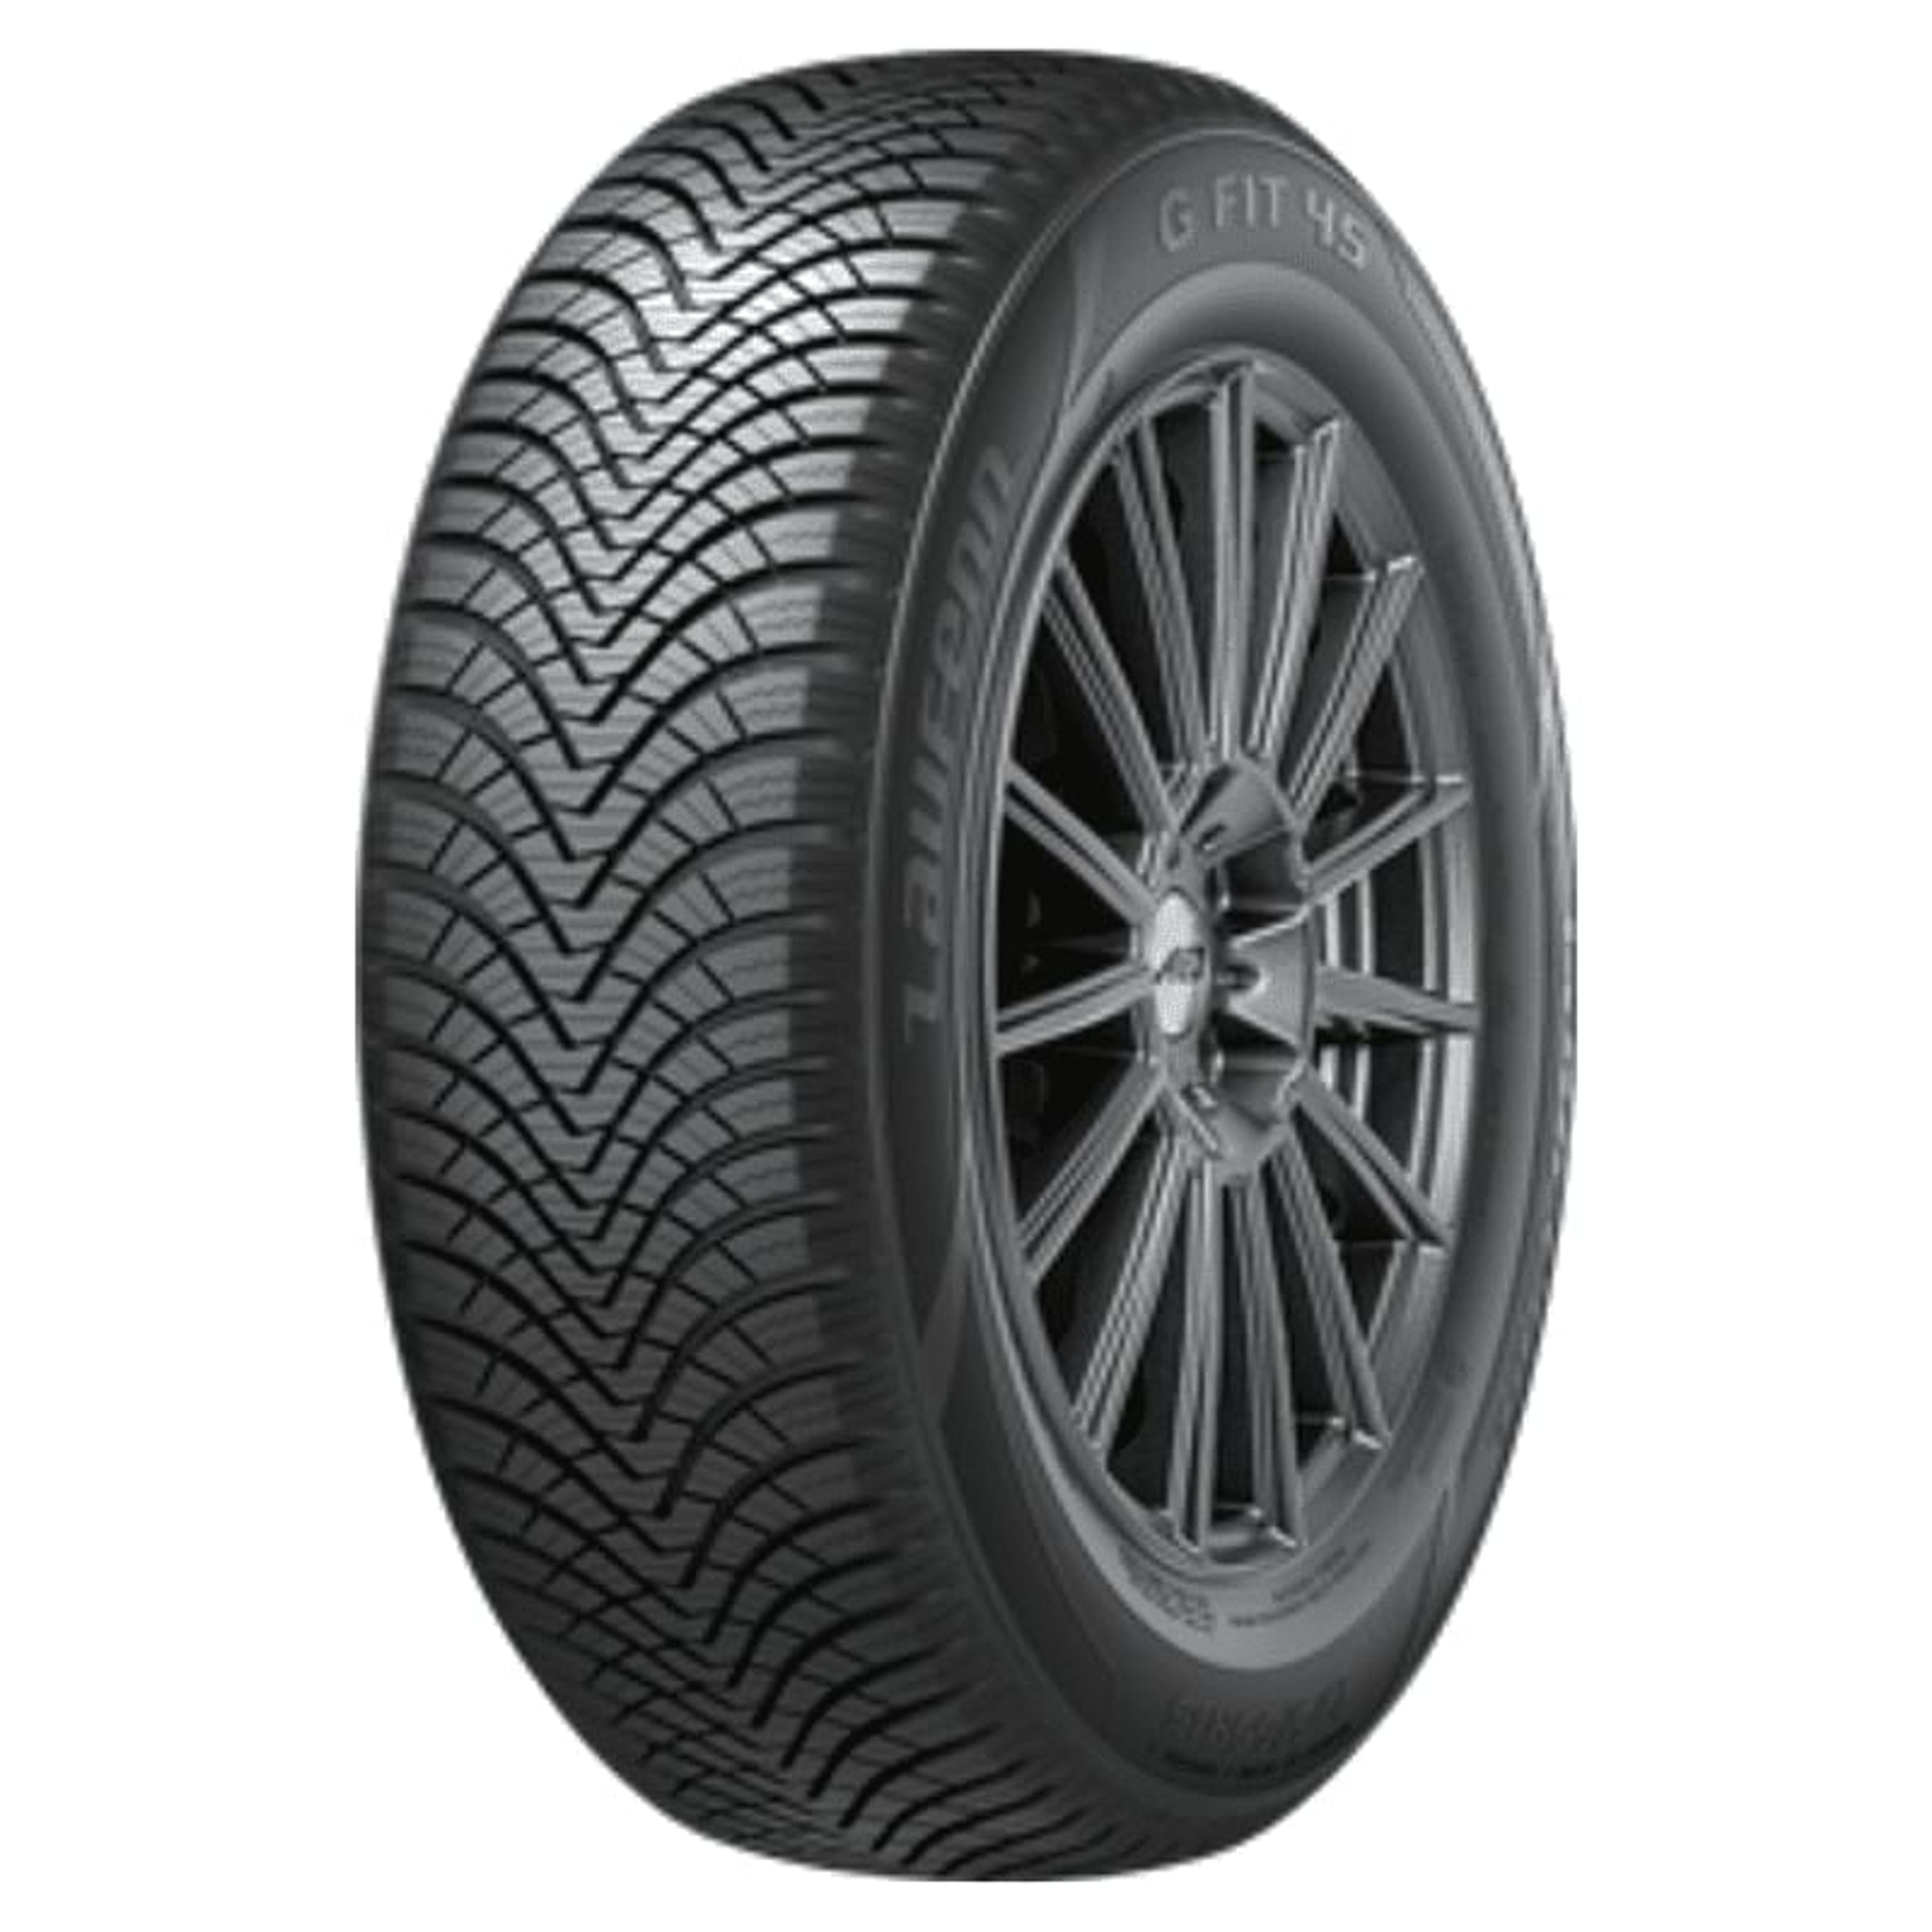 Buy Laufenn G FIT 4S Tires Online | SimpleTire | Autoreifen